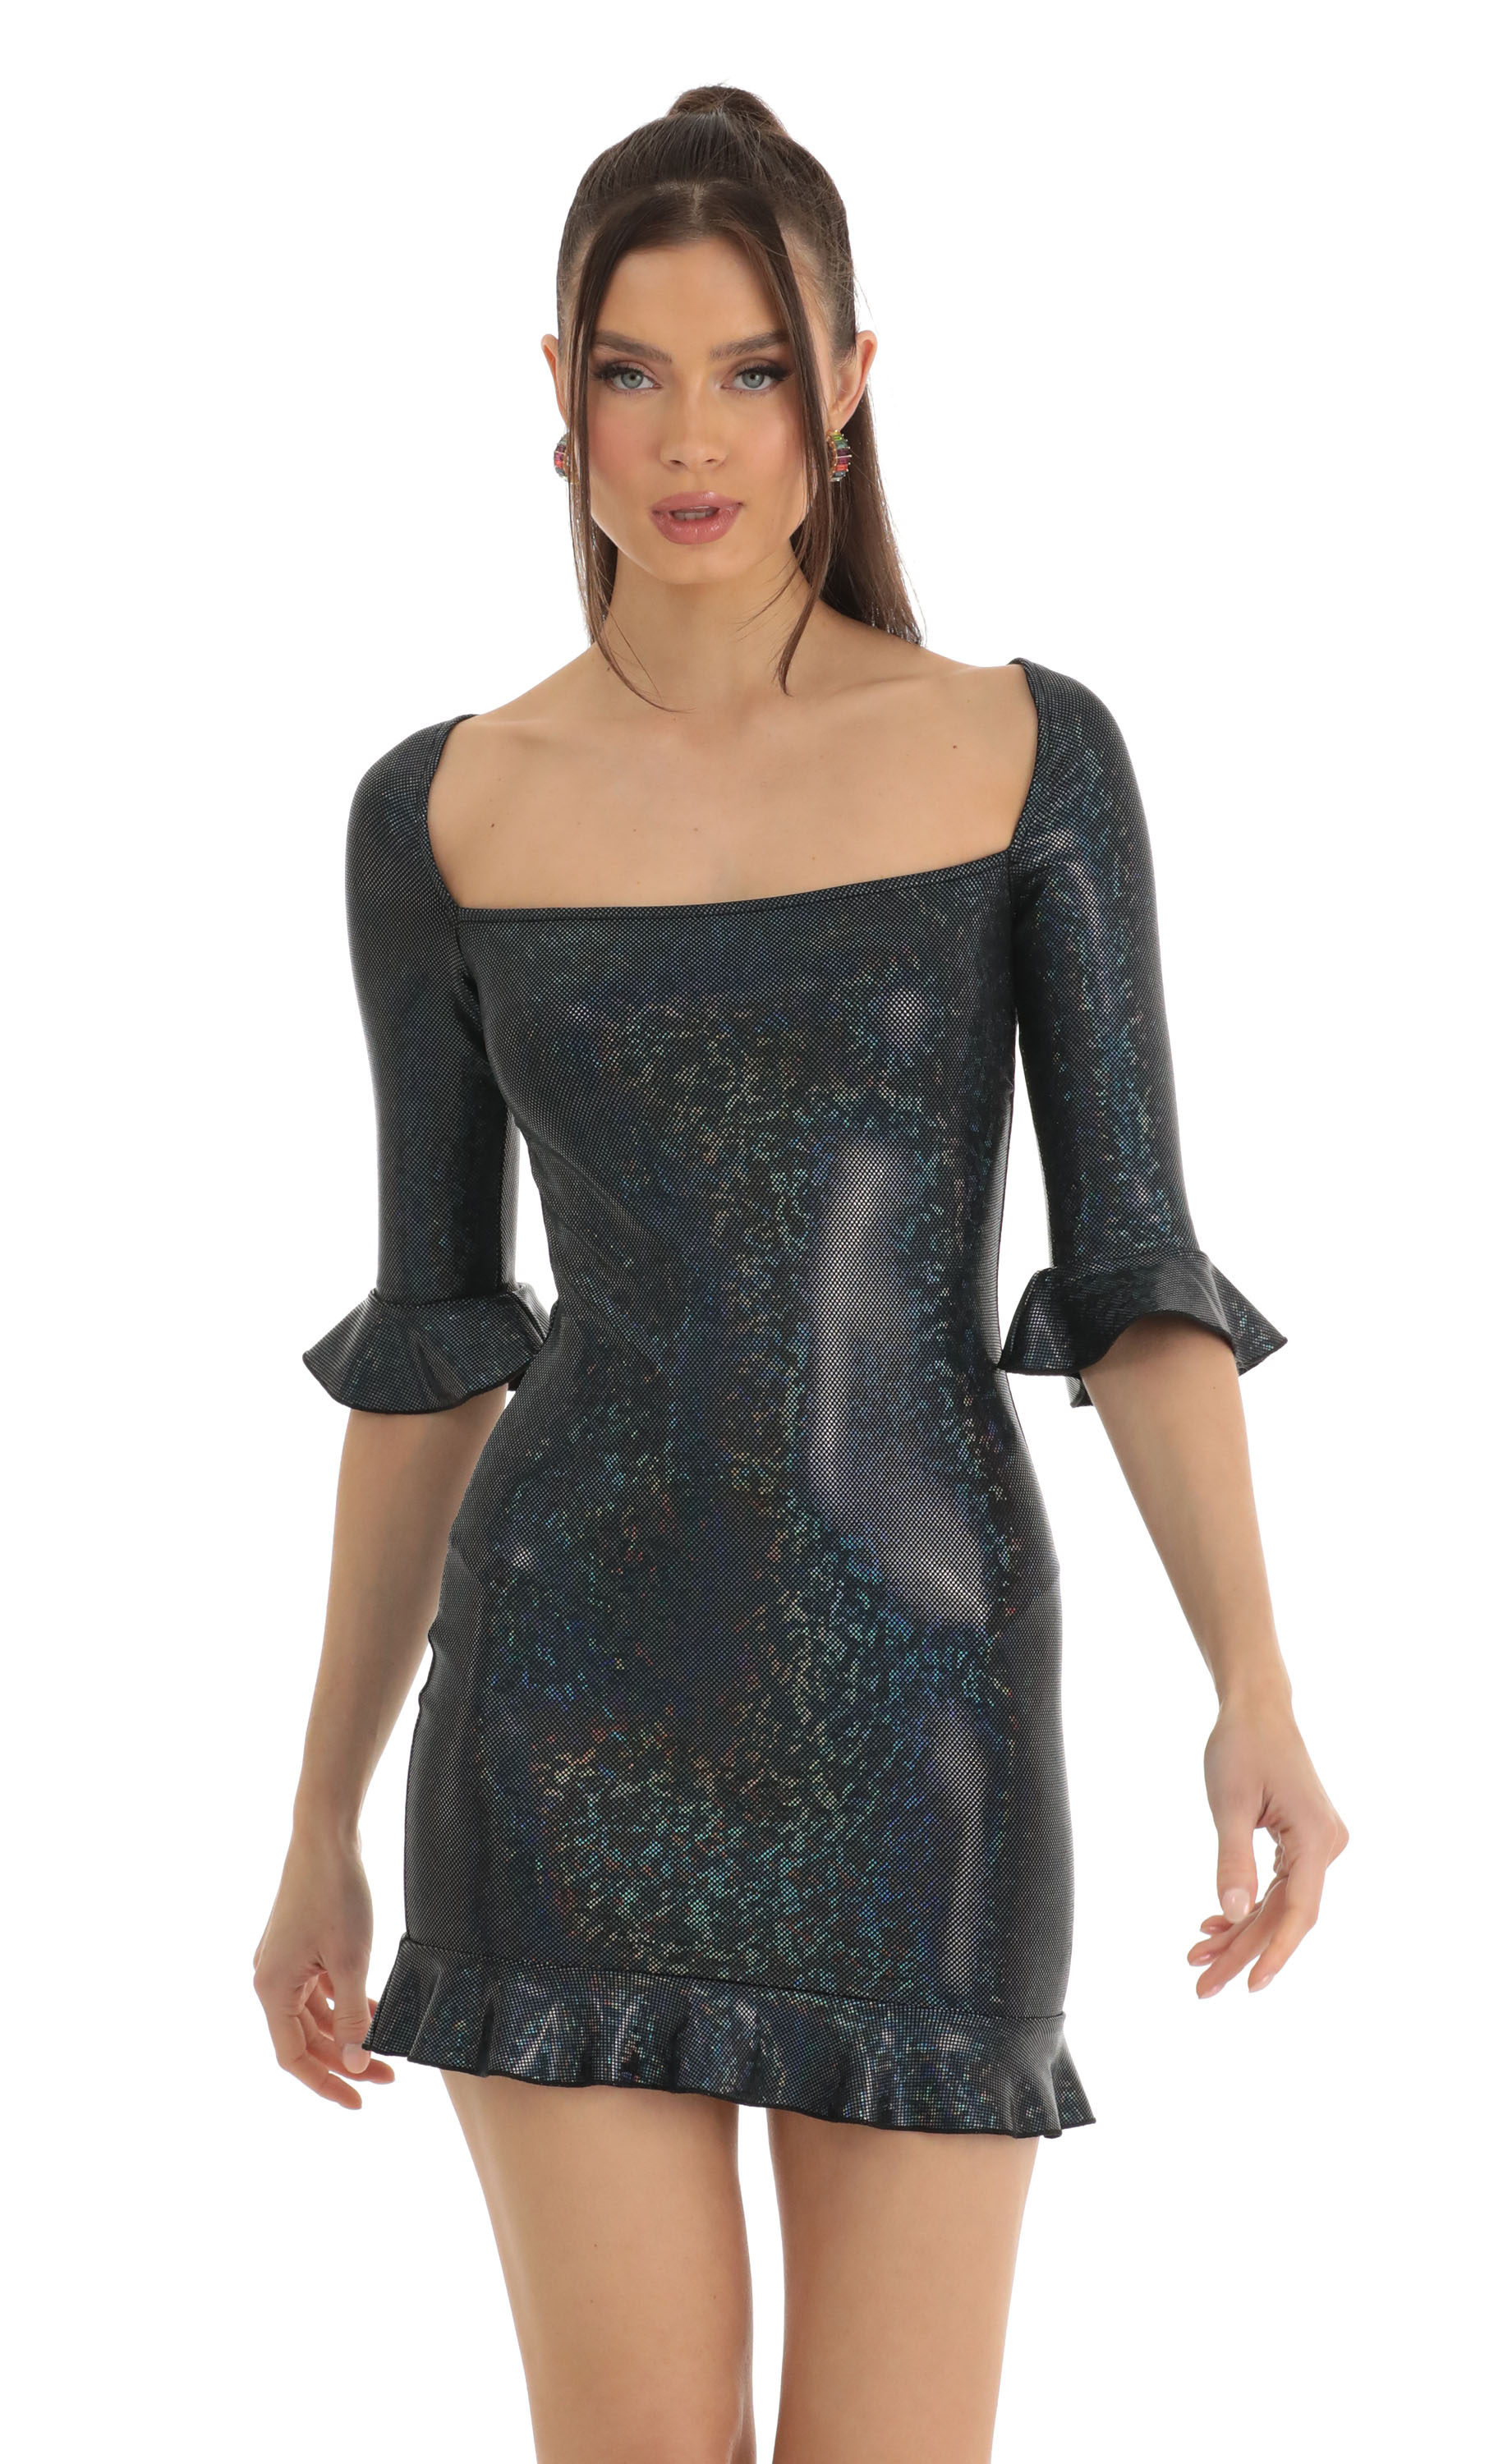 Jovi Holographic Bodycon Dress in Black Multi